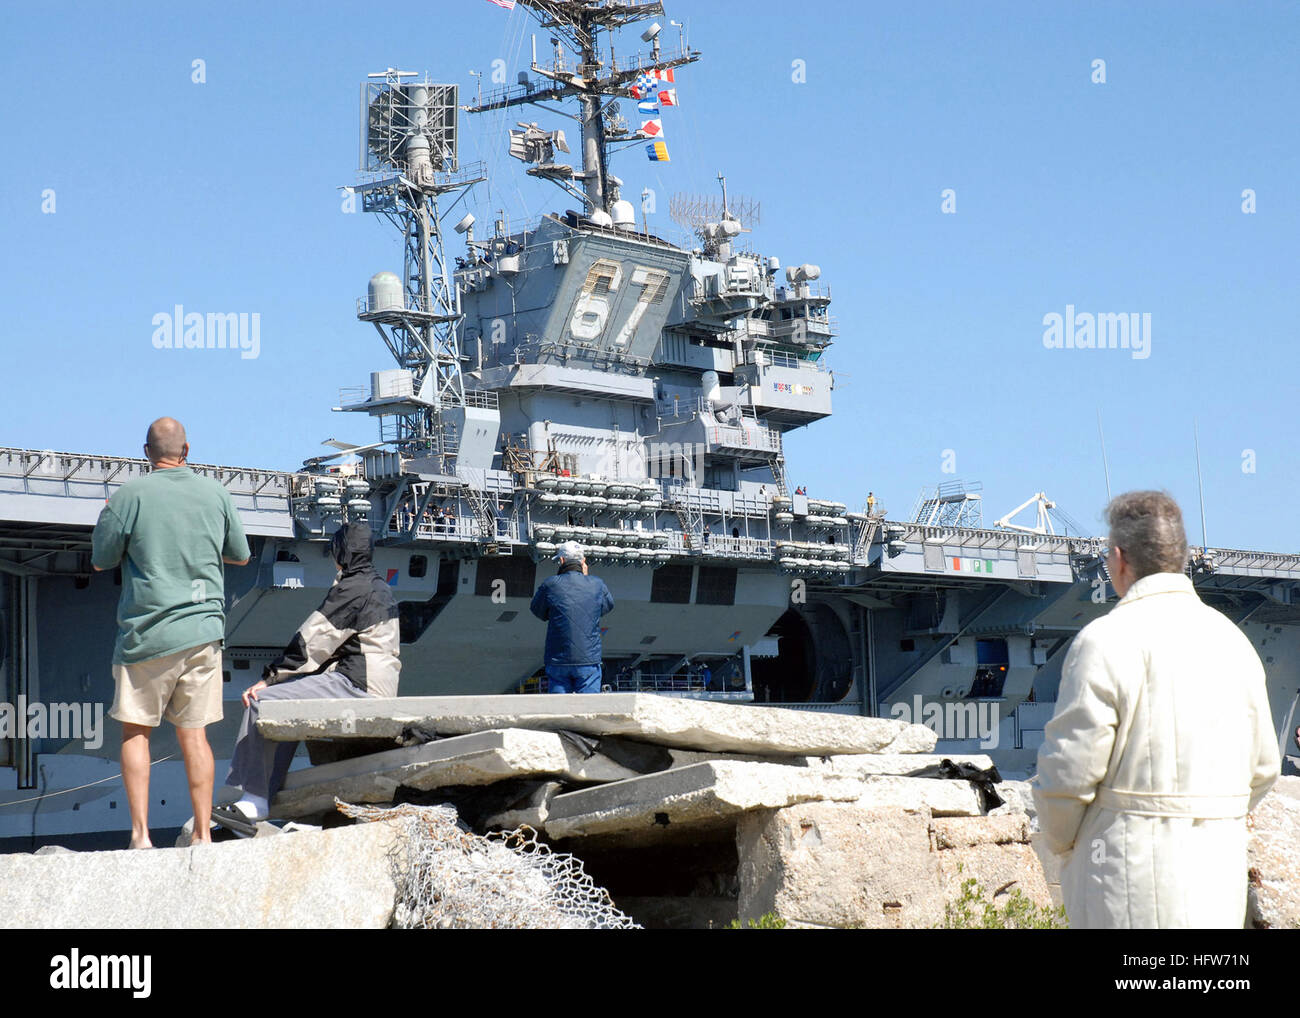 070220-N-1550W-004 Mayport, Floride (fév. 20, 2007) - Les spectateurs watch USS John F. Kennedy (CV 67) qu'elle quitte la station navale de Mayport pour la dernière période en cours avant son démantèlement en mars. U.S. Navy photo by Mass Communication Specialist 2e classe Elizabeth Williams (libéré) US Navy 070220-N-1550W-004 spectateurs watch USS John F. Kennedy (CV 67) qu'elle quitte la station navale de Mayport pour la dernière période en cours avant son démantèlement en Mars Banque D'Images